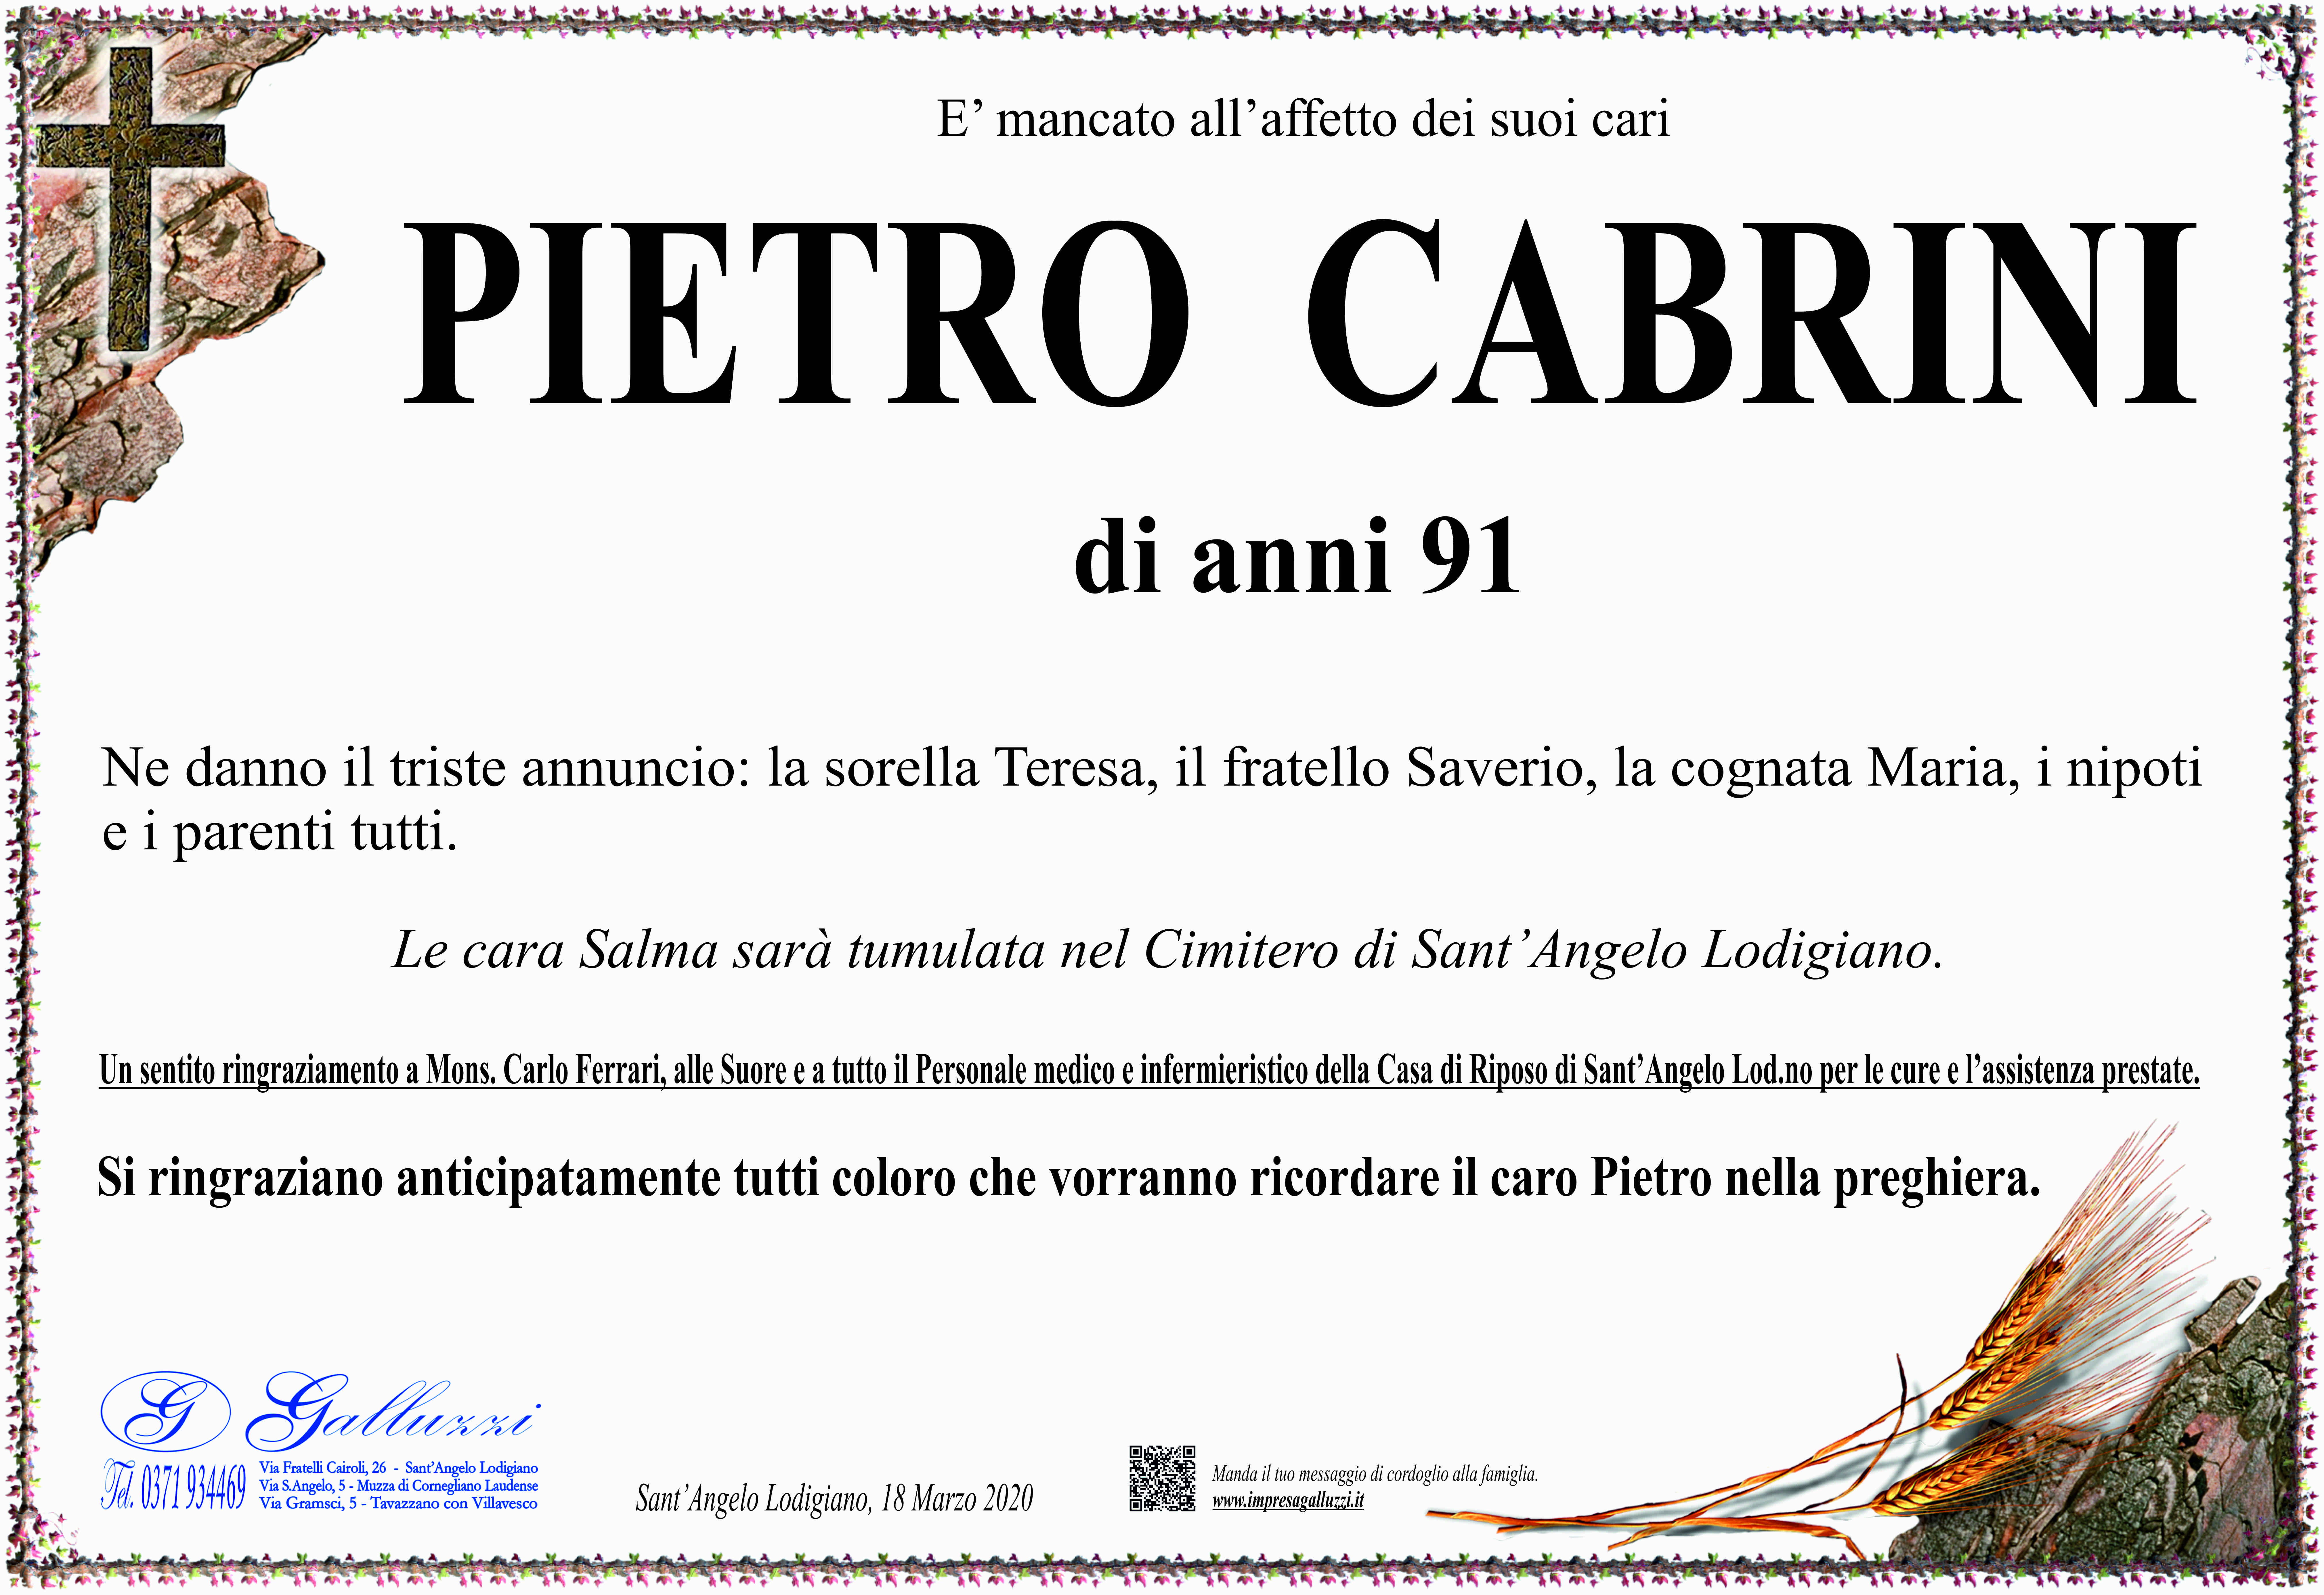 Pietro Cabrini